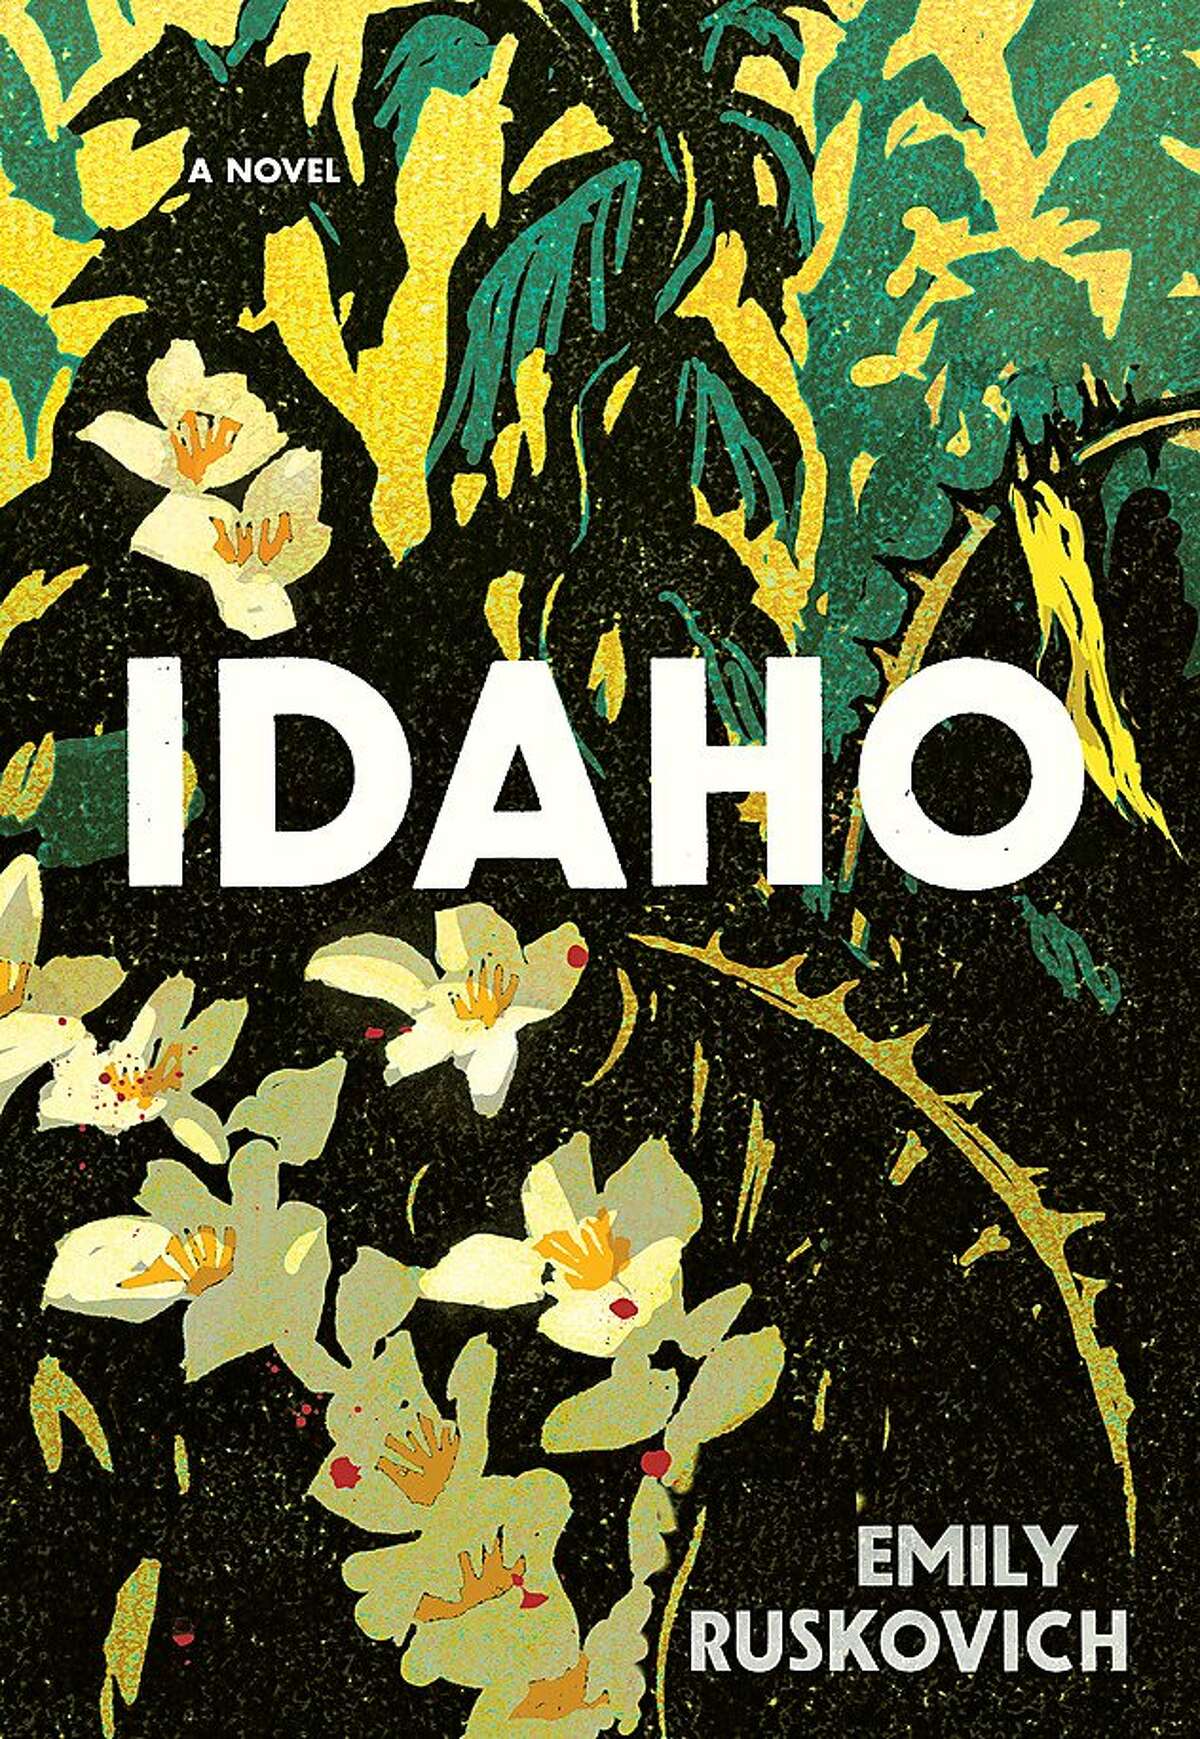 "Idaho"